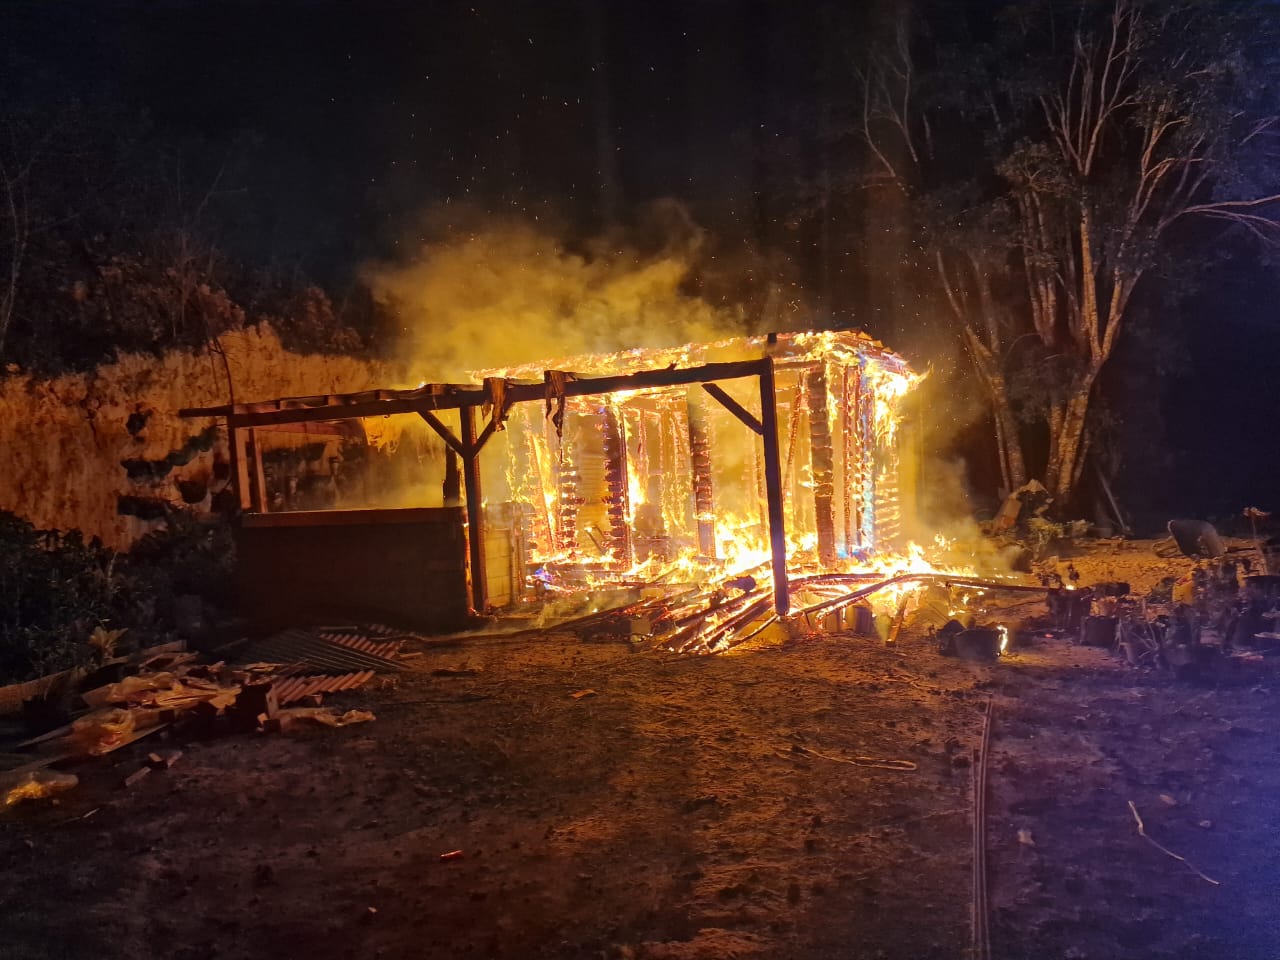     Deux maisons ont pris feu cette nuit en Guadeloupe

